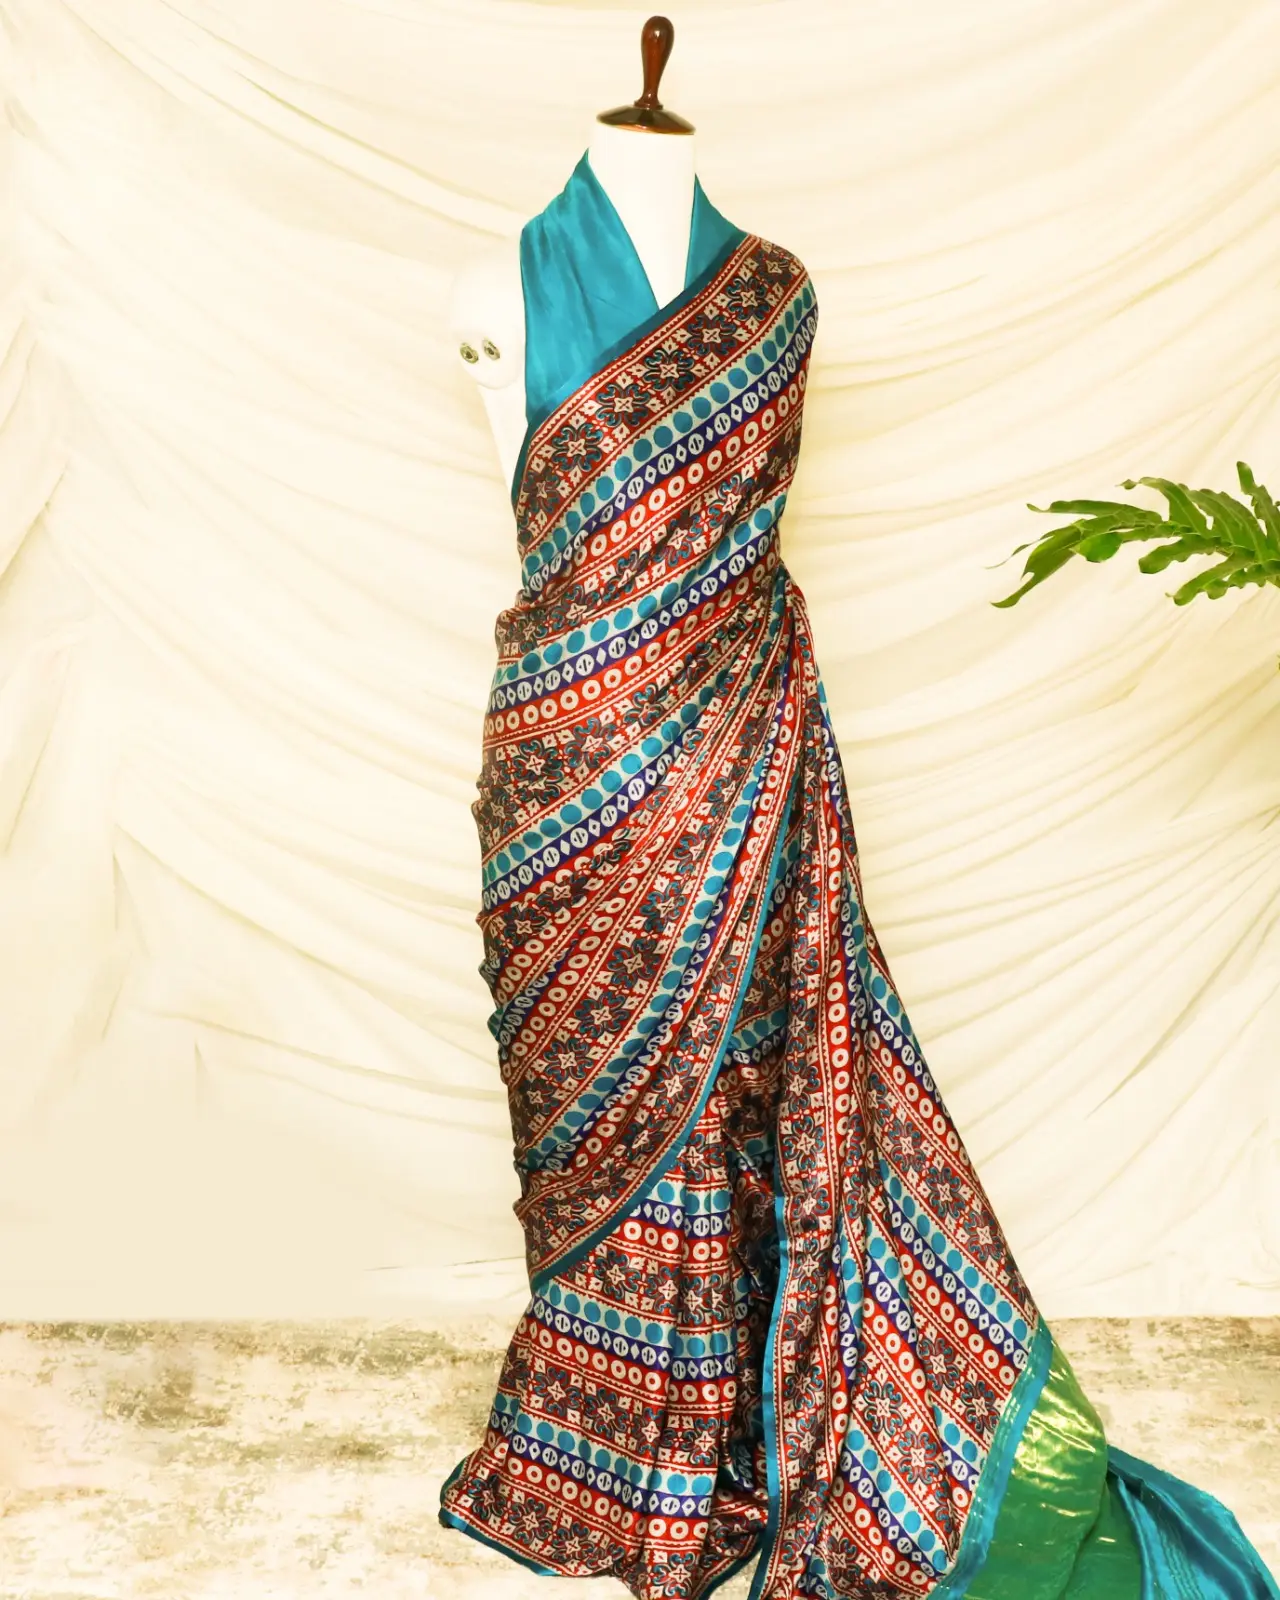 Vente chaude dernière conception femmes en mousseline de soie imprimé Saree avec broderie lourde travail confortable tissu Saree d'Inde